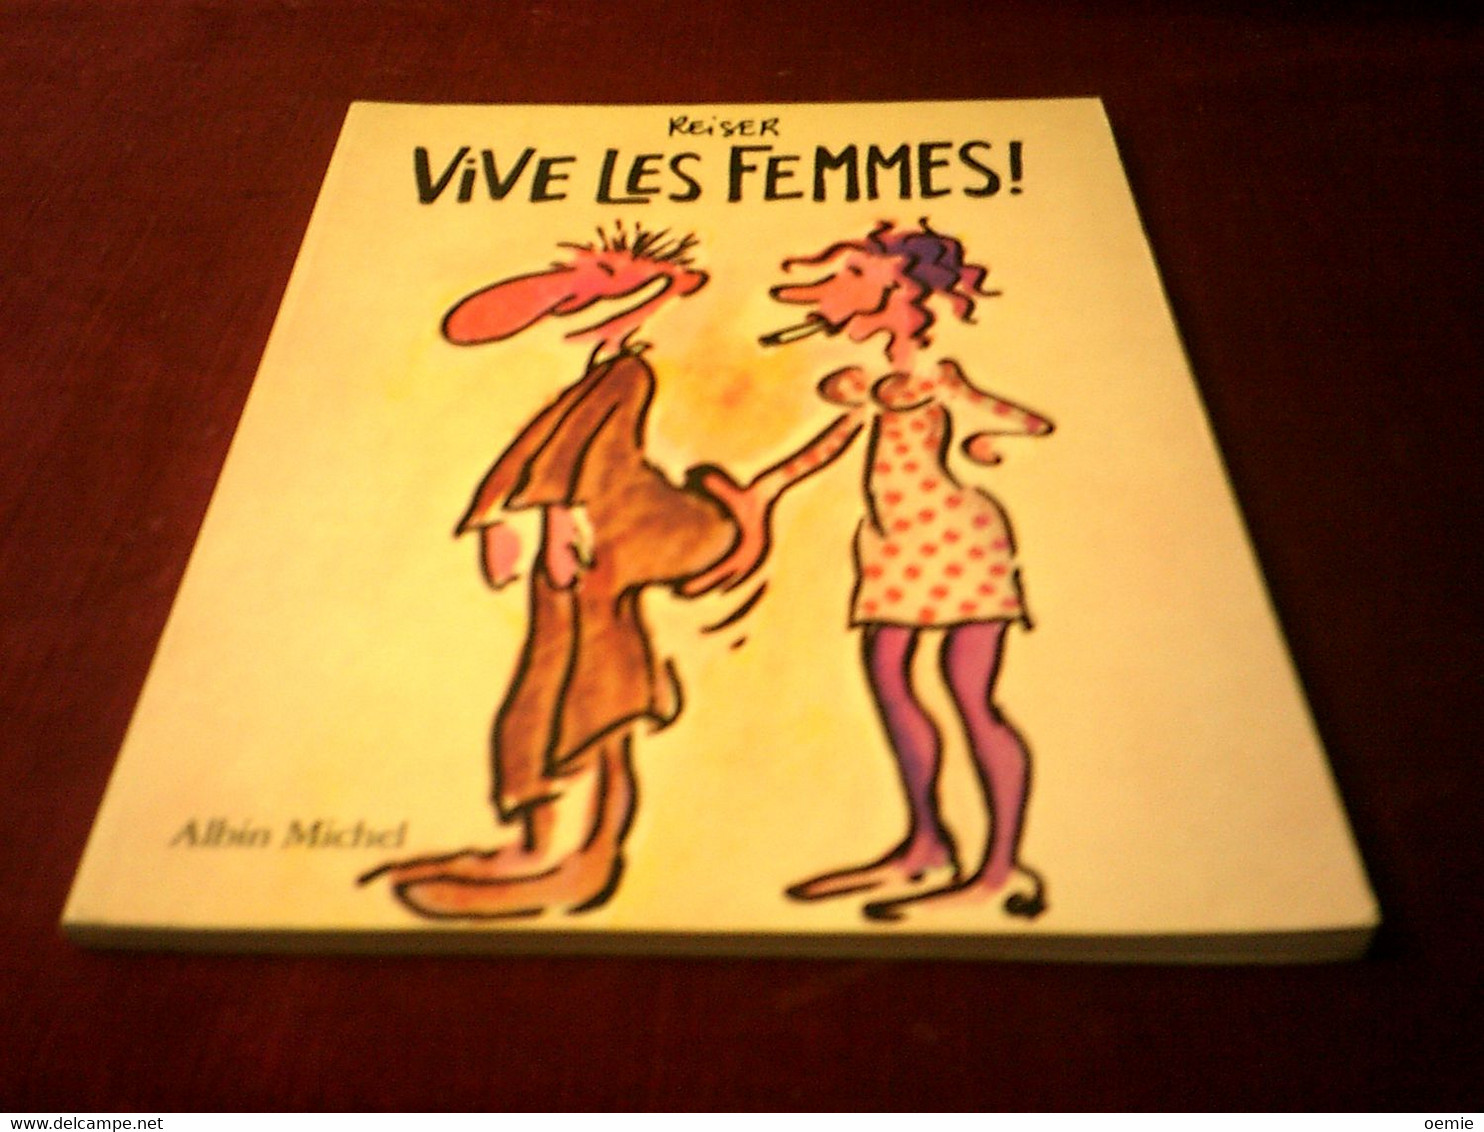 VIVE LES FEMMES - Reiser